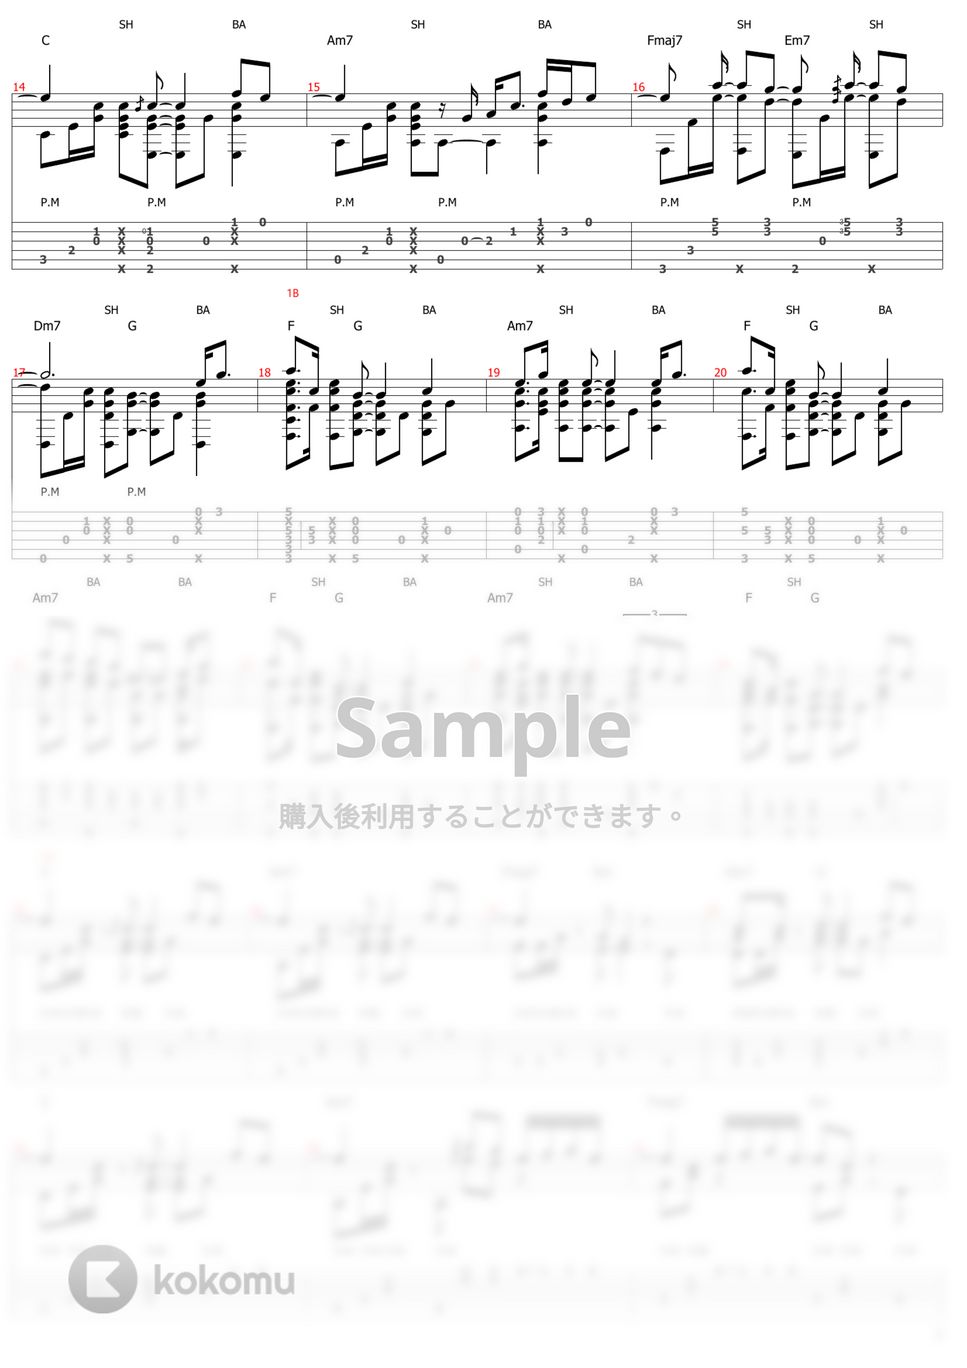 Aimer - カタオモイ (ソロギター) by おさむらいさん